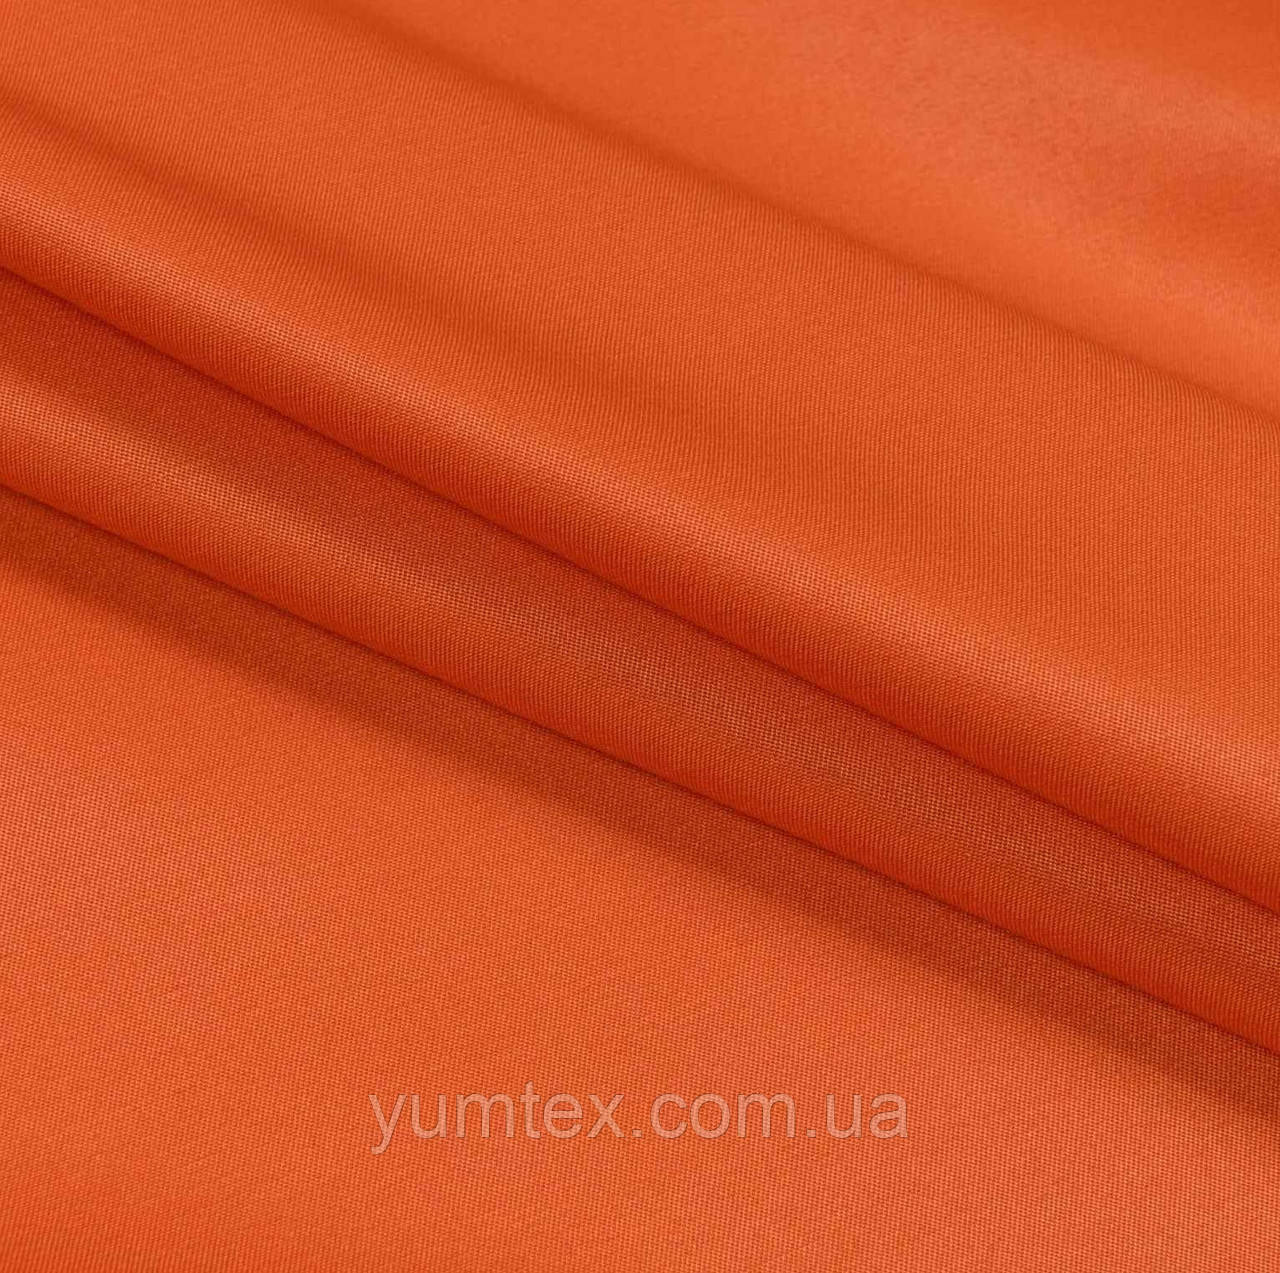 Тканина грета водовідштовхувальна 53% бавовна для халатів комбінезонів спецодягу костюмів роби помаранчева